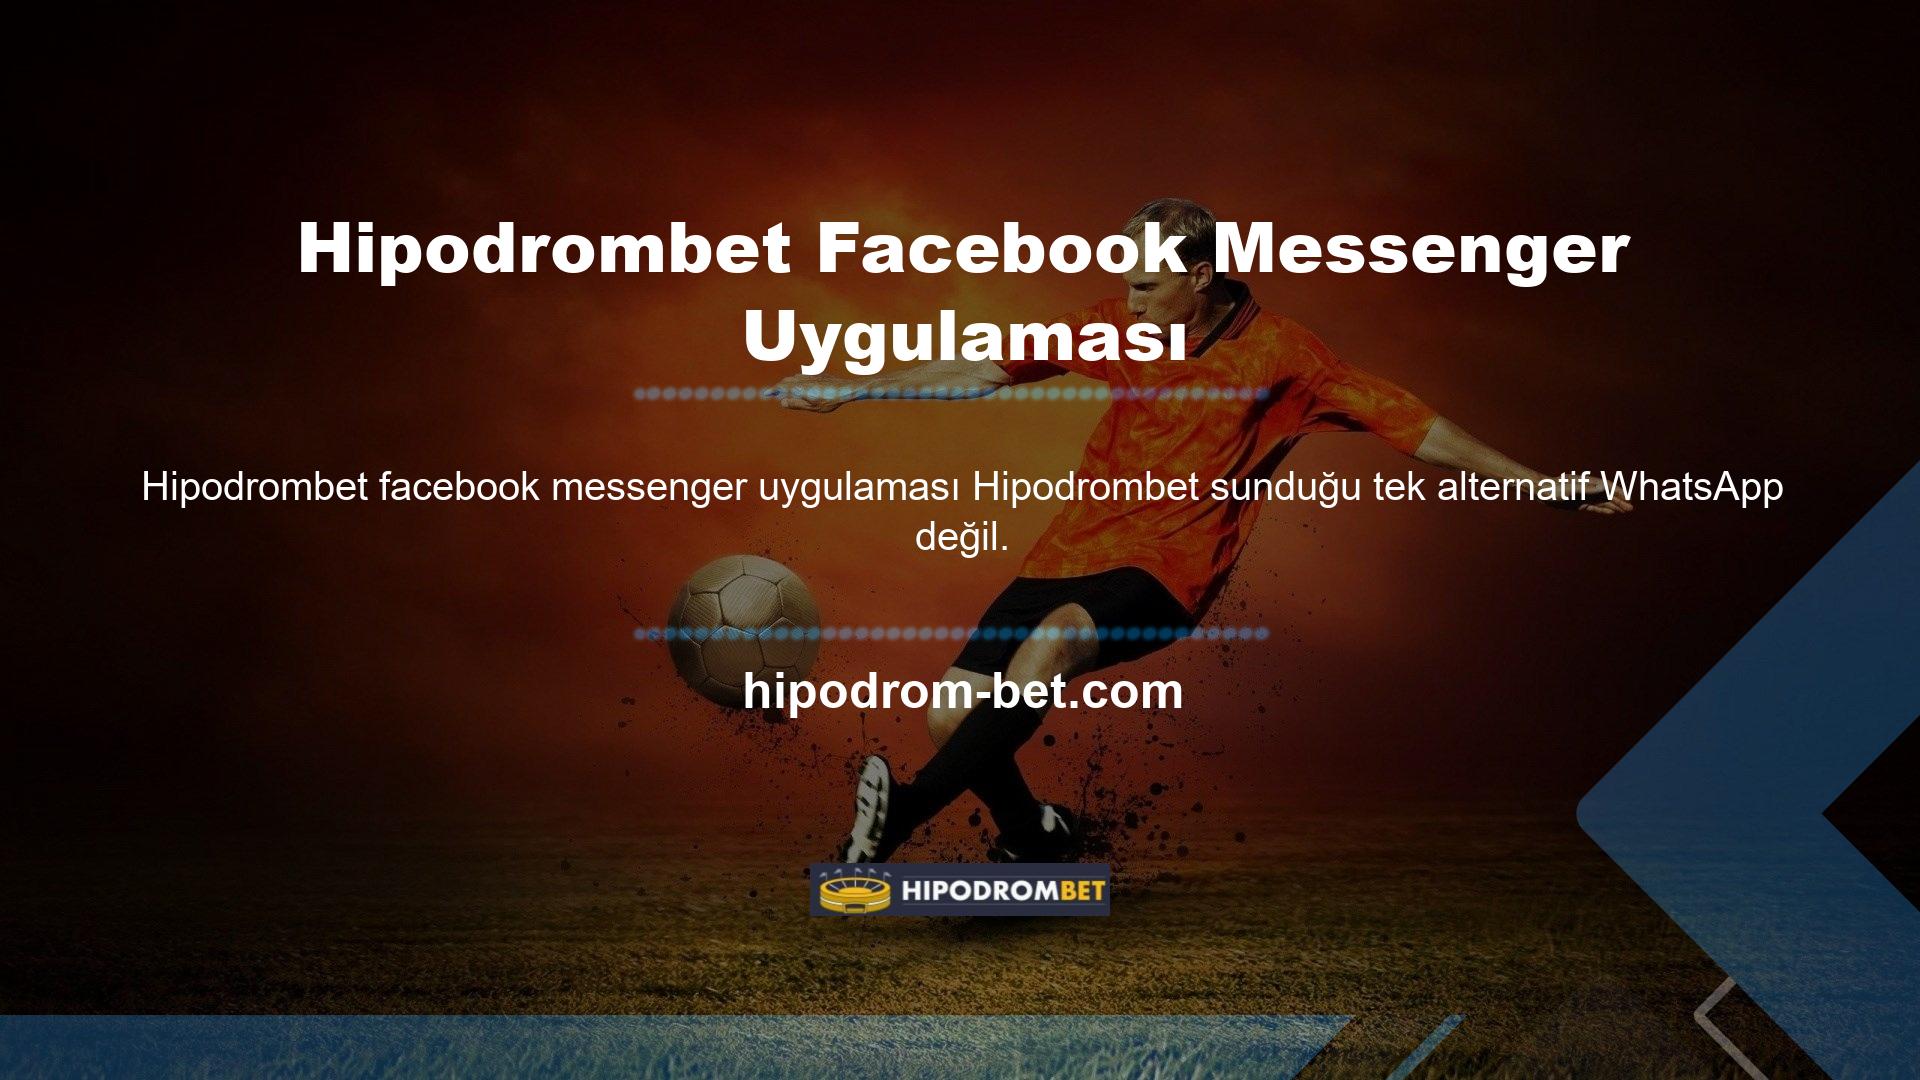 Hipodrombet Facebook Messenger uygulaması da çok popüler